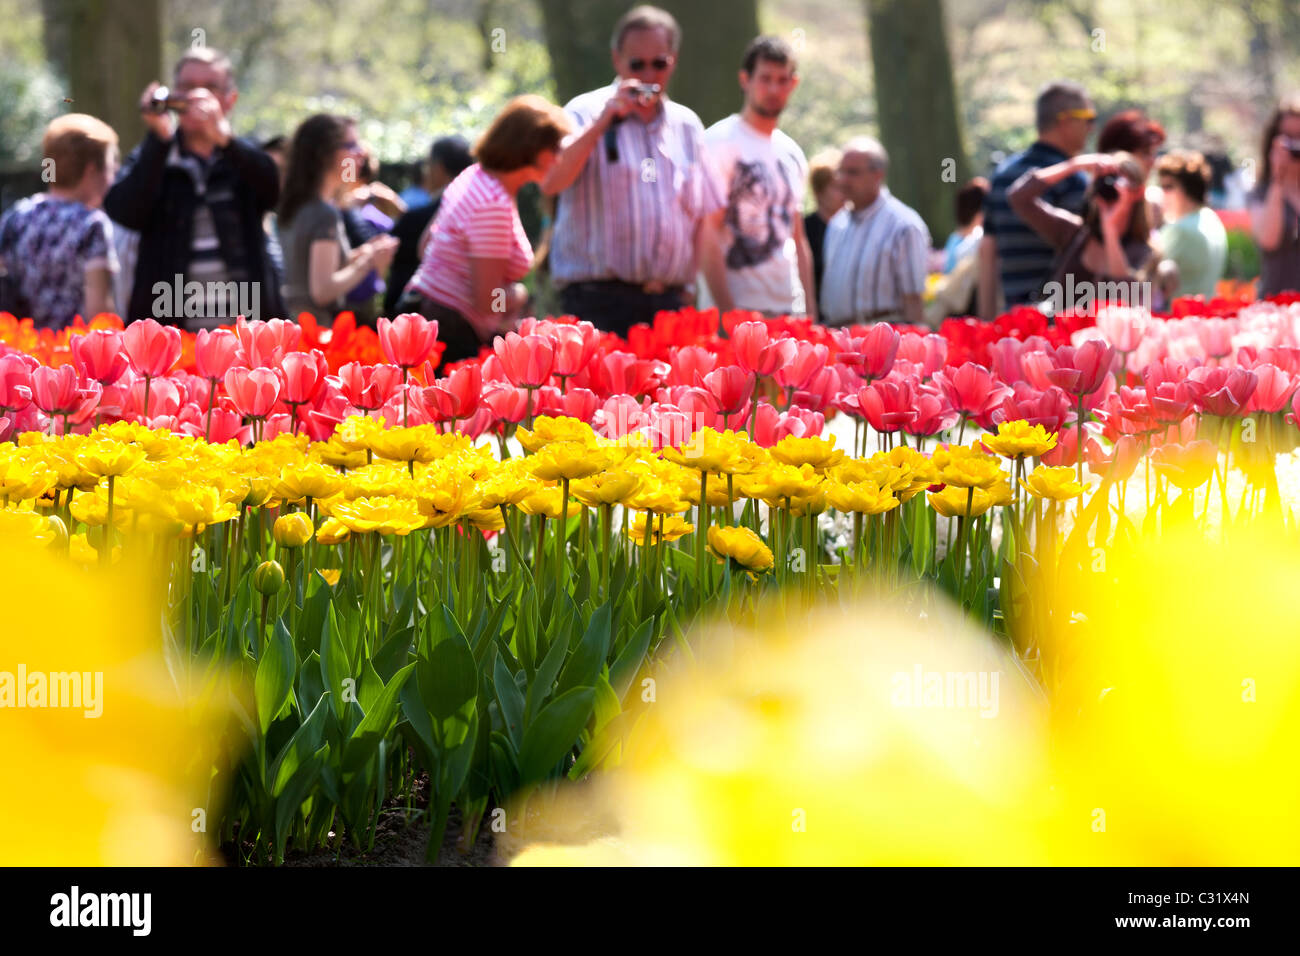 Besucher, die Bilder von Tulpen auf dem Keukenhof Blumengarten Lisse. Touristische Attraktion zeichnen riesige Menschenmengen an einem sonnigen Tag. Stockfoto